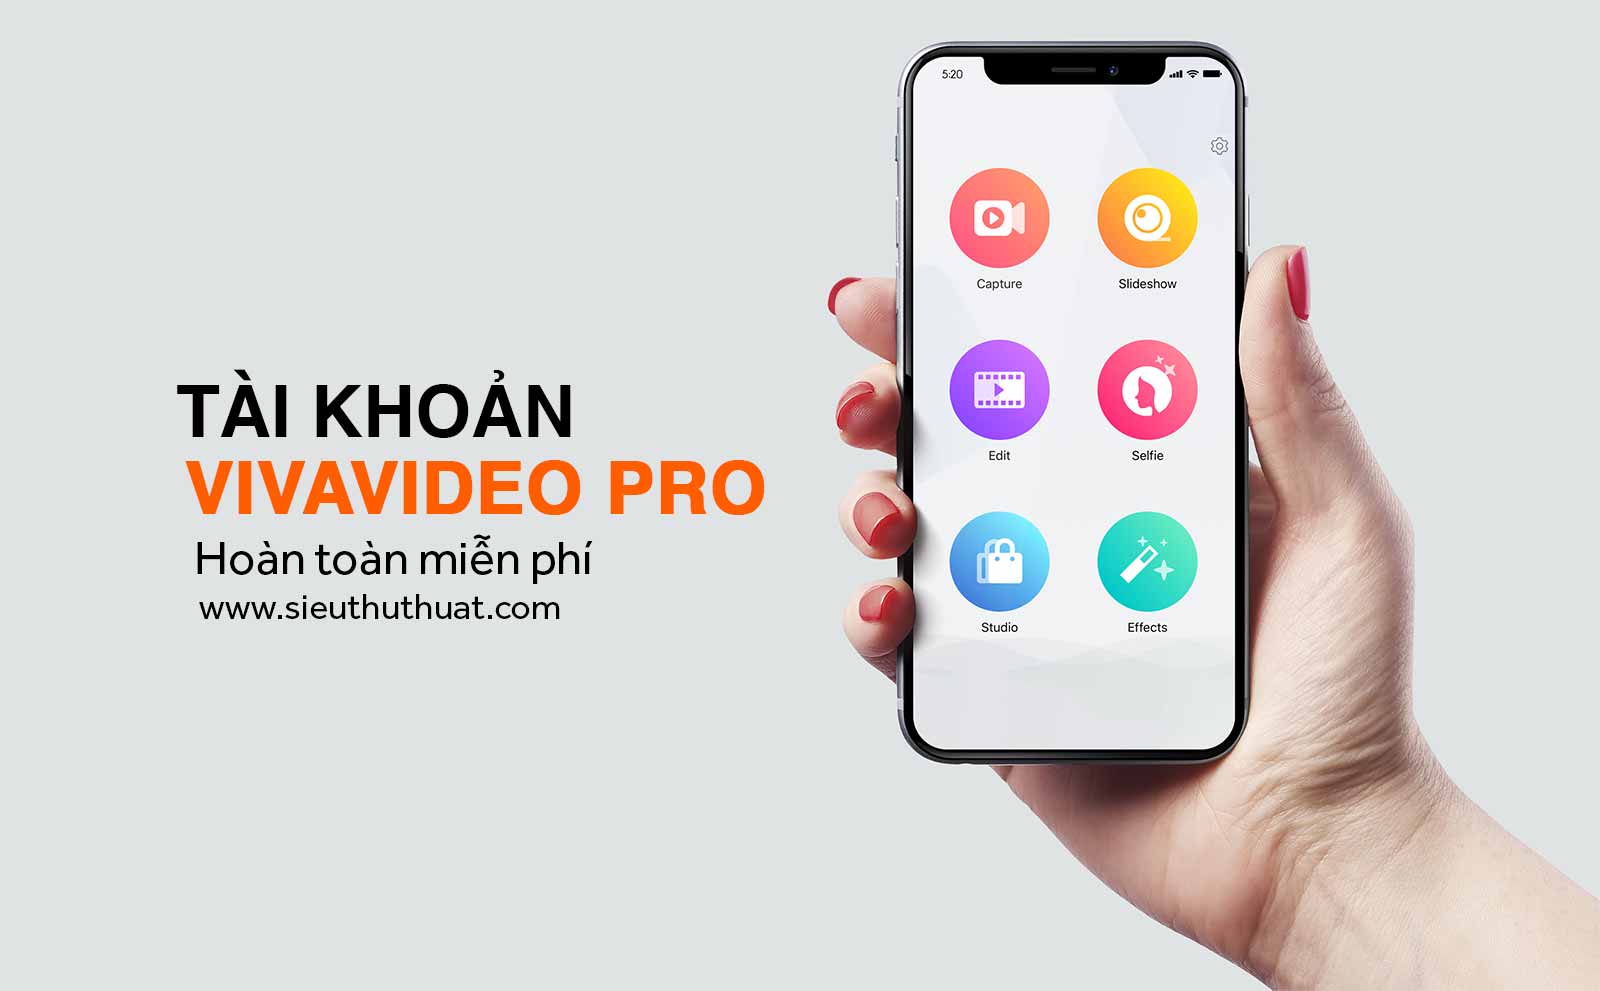 Tải VivaVideo Pro cho iOS miễn phí